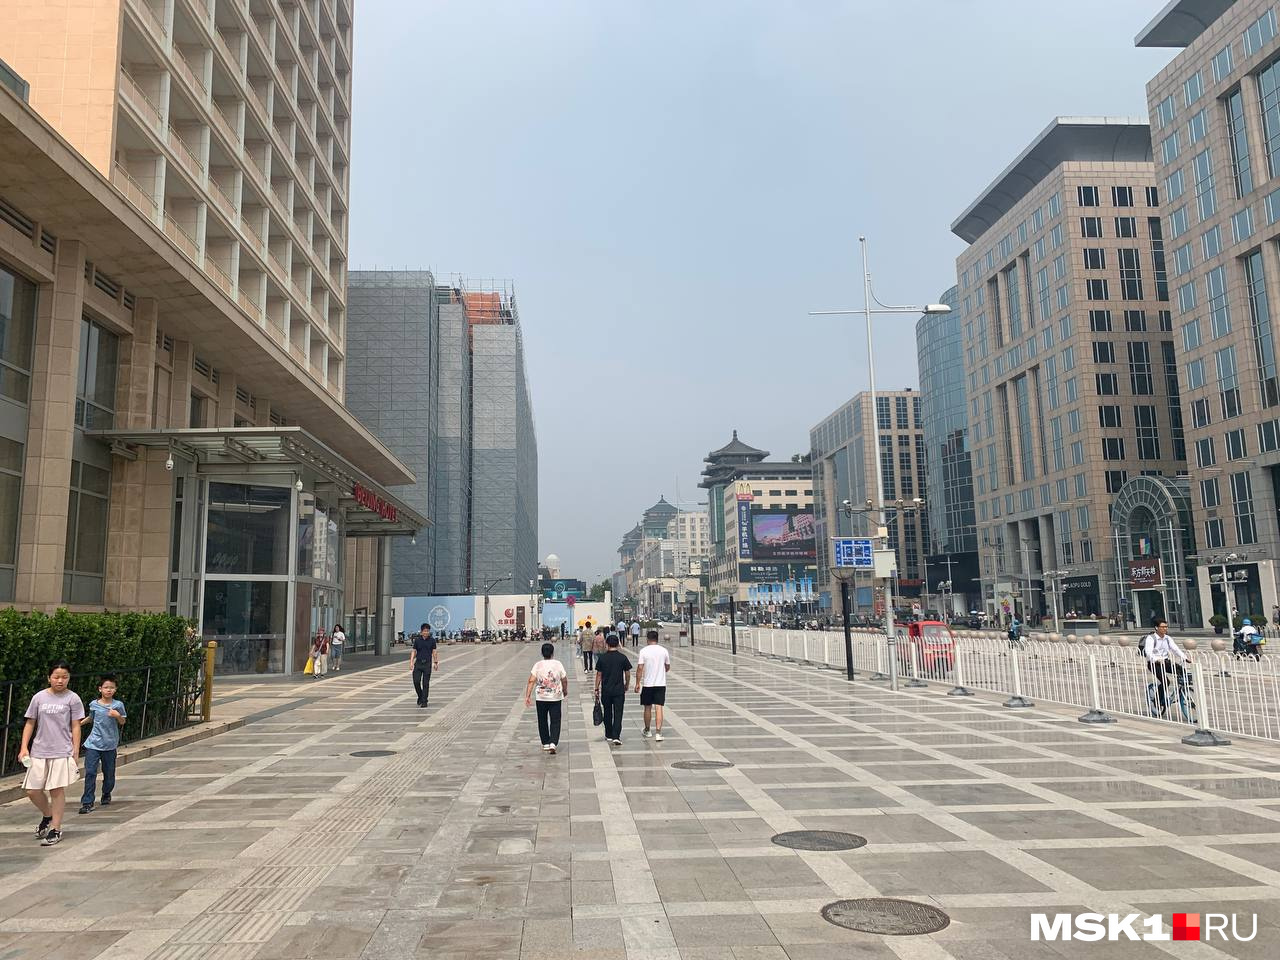 Одна из центральных улиц в Пекине с несколькими торговыми центрами